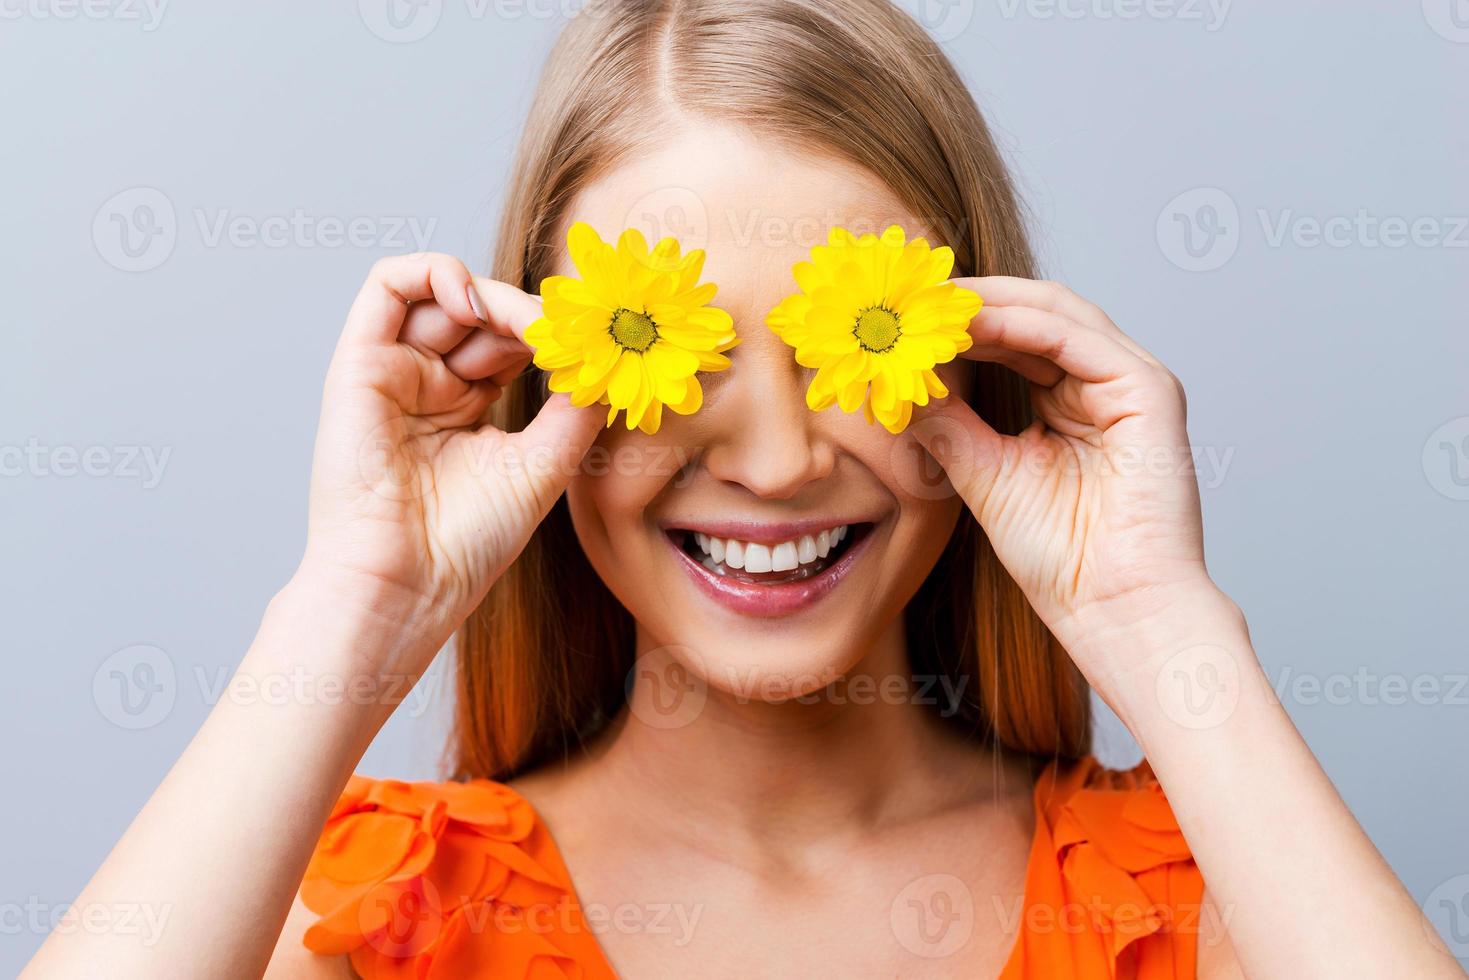 ambiance d'été. belle jeune femme en jolie robe tenant des fleurs devant ses yeux en se tenant debout sur fond gris photo